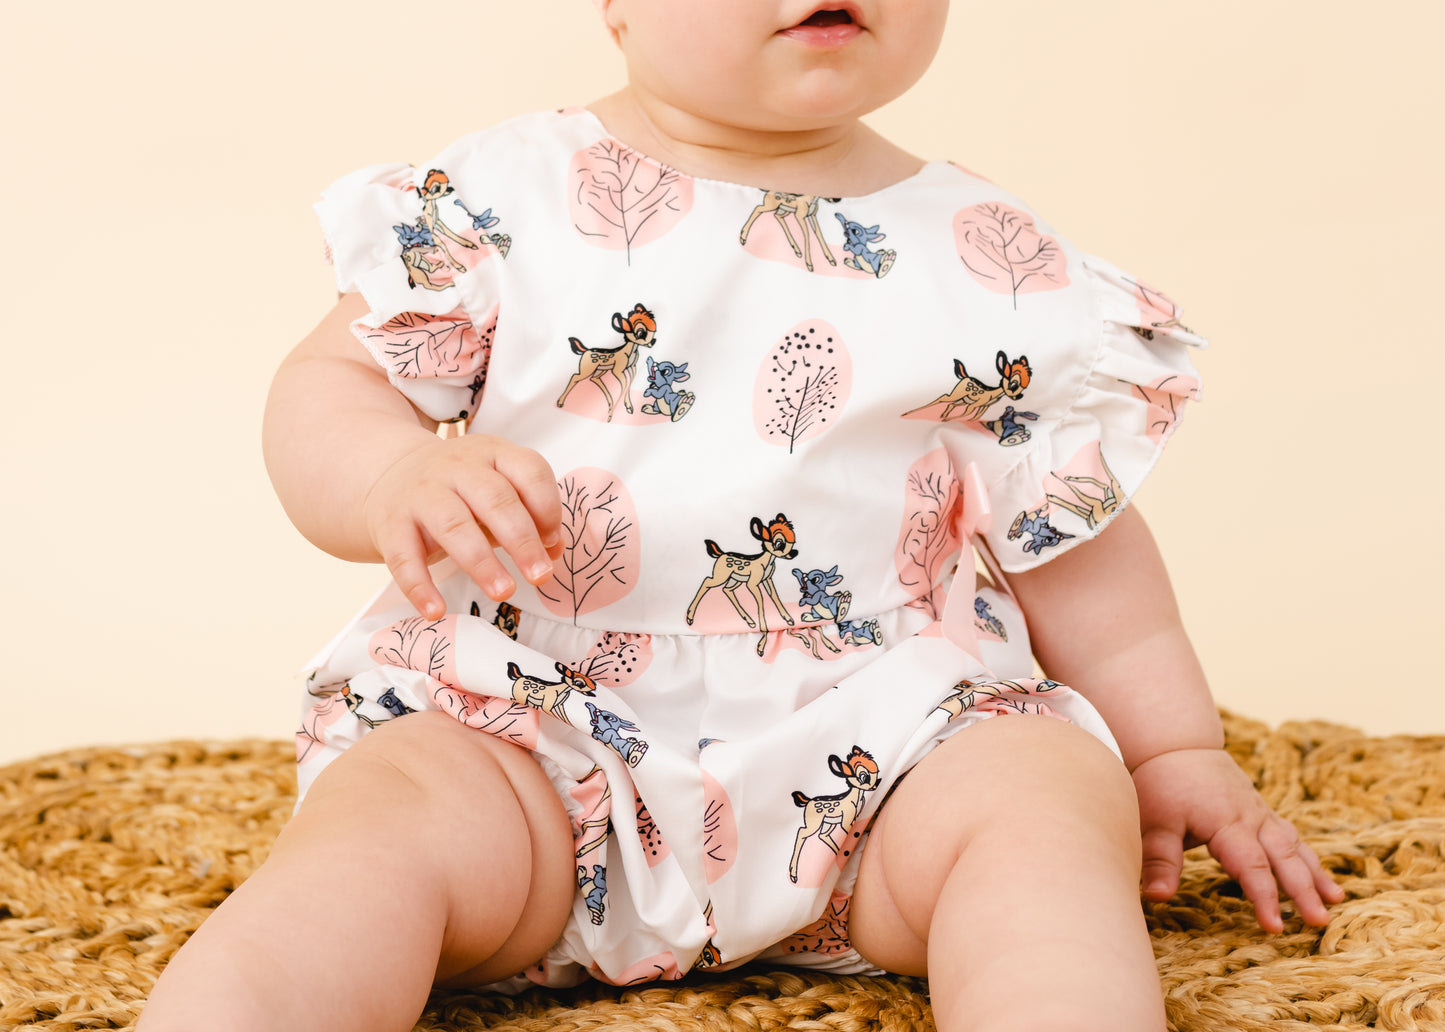 soft Romper Jumpsuit for newborn infant clothes - Patucia